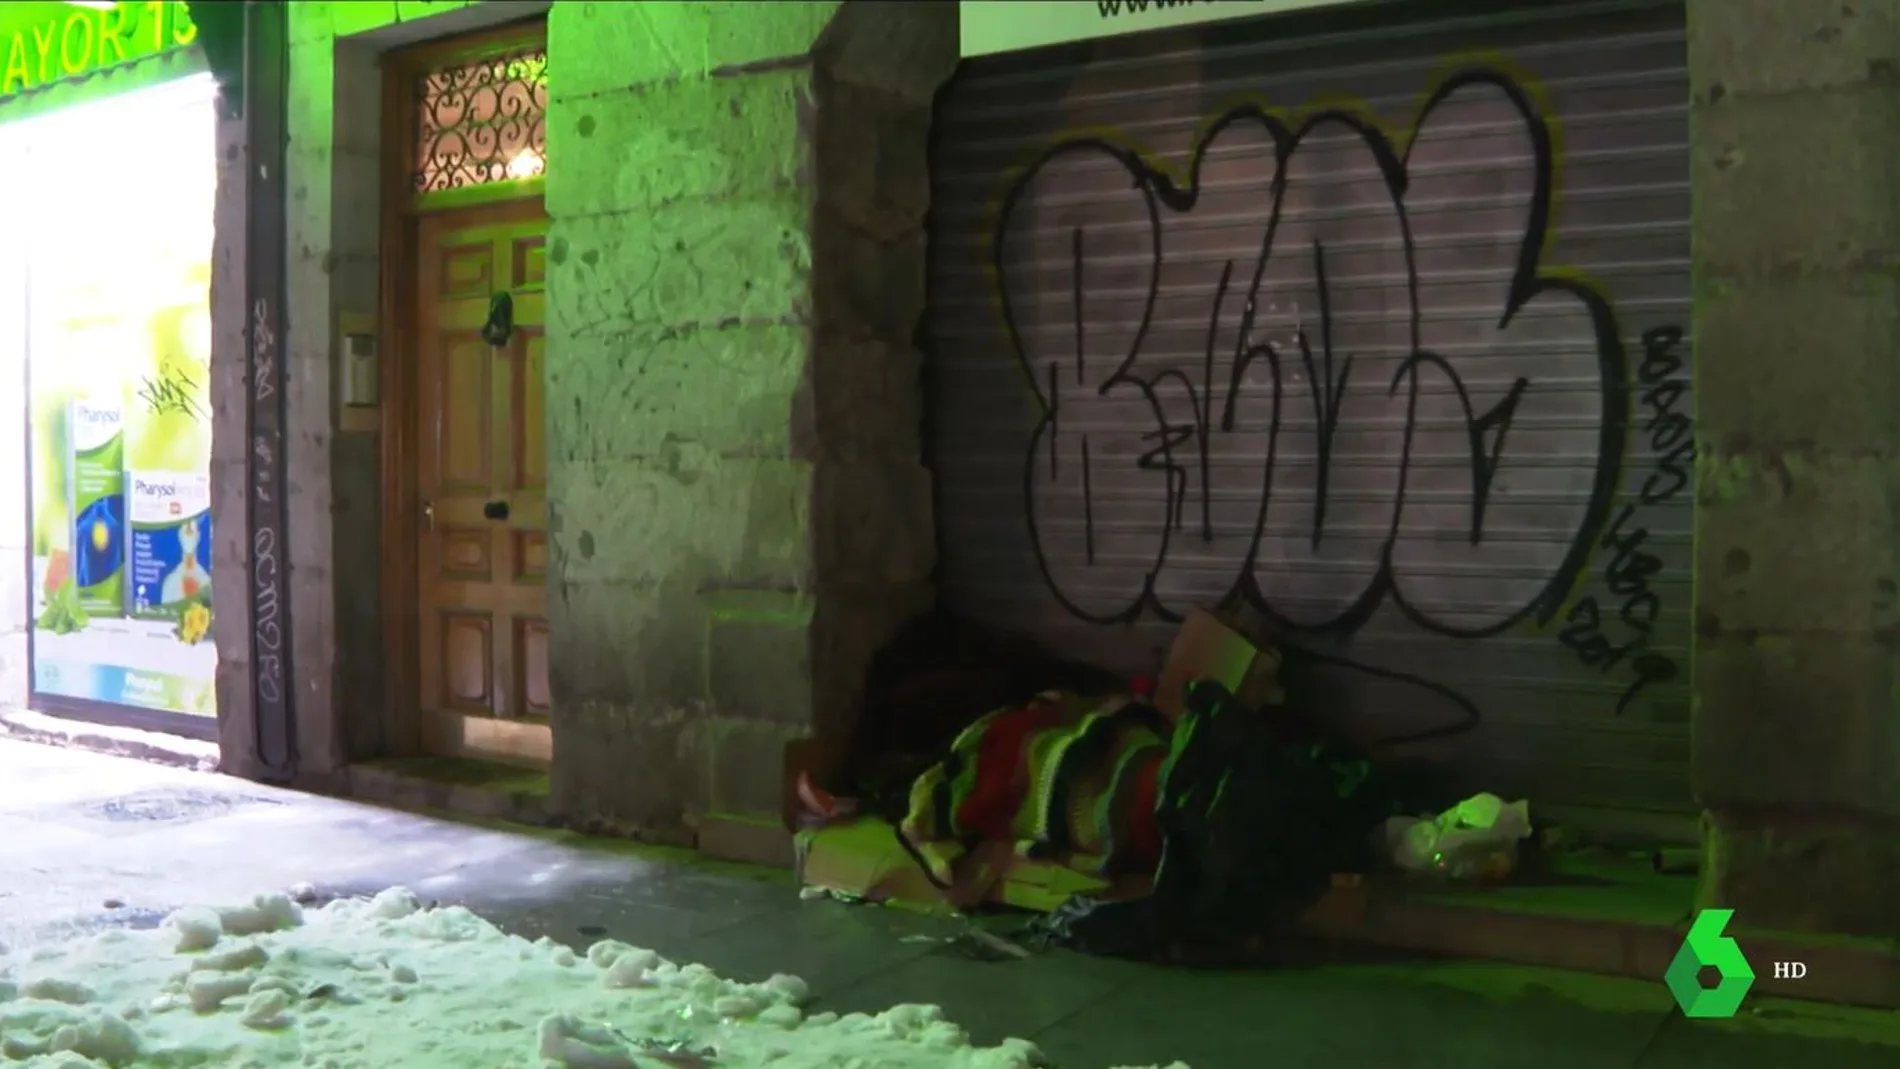 Una persona durmiendo en la calle en Madrid en plena ola de frío